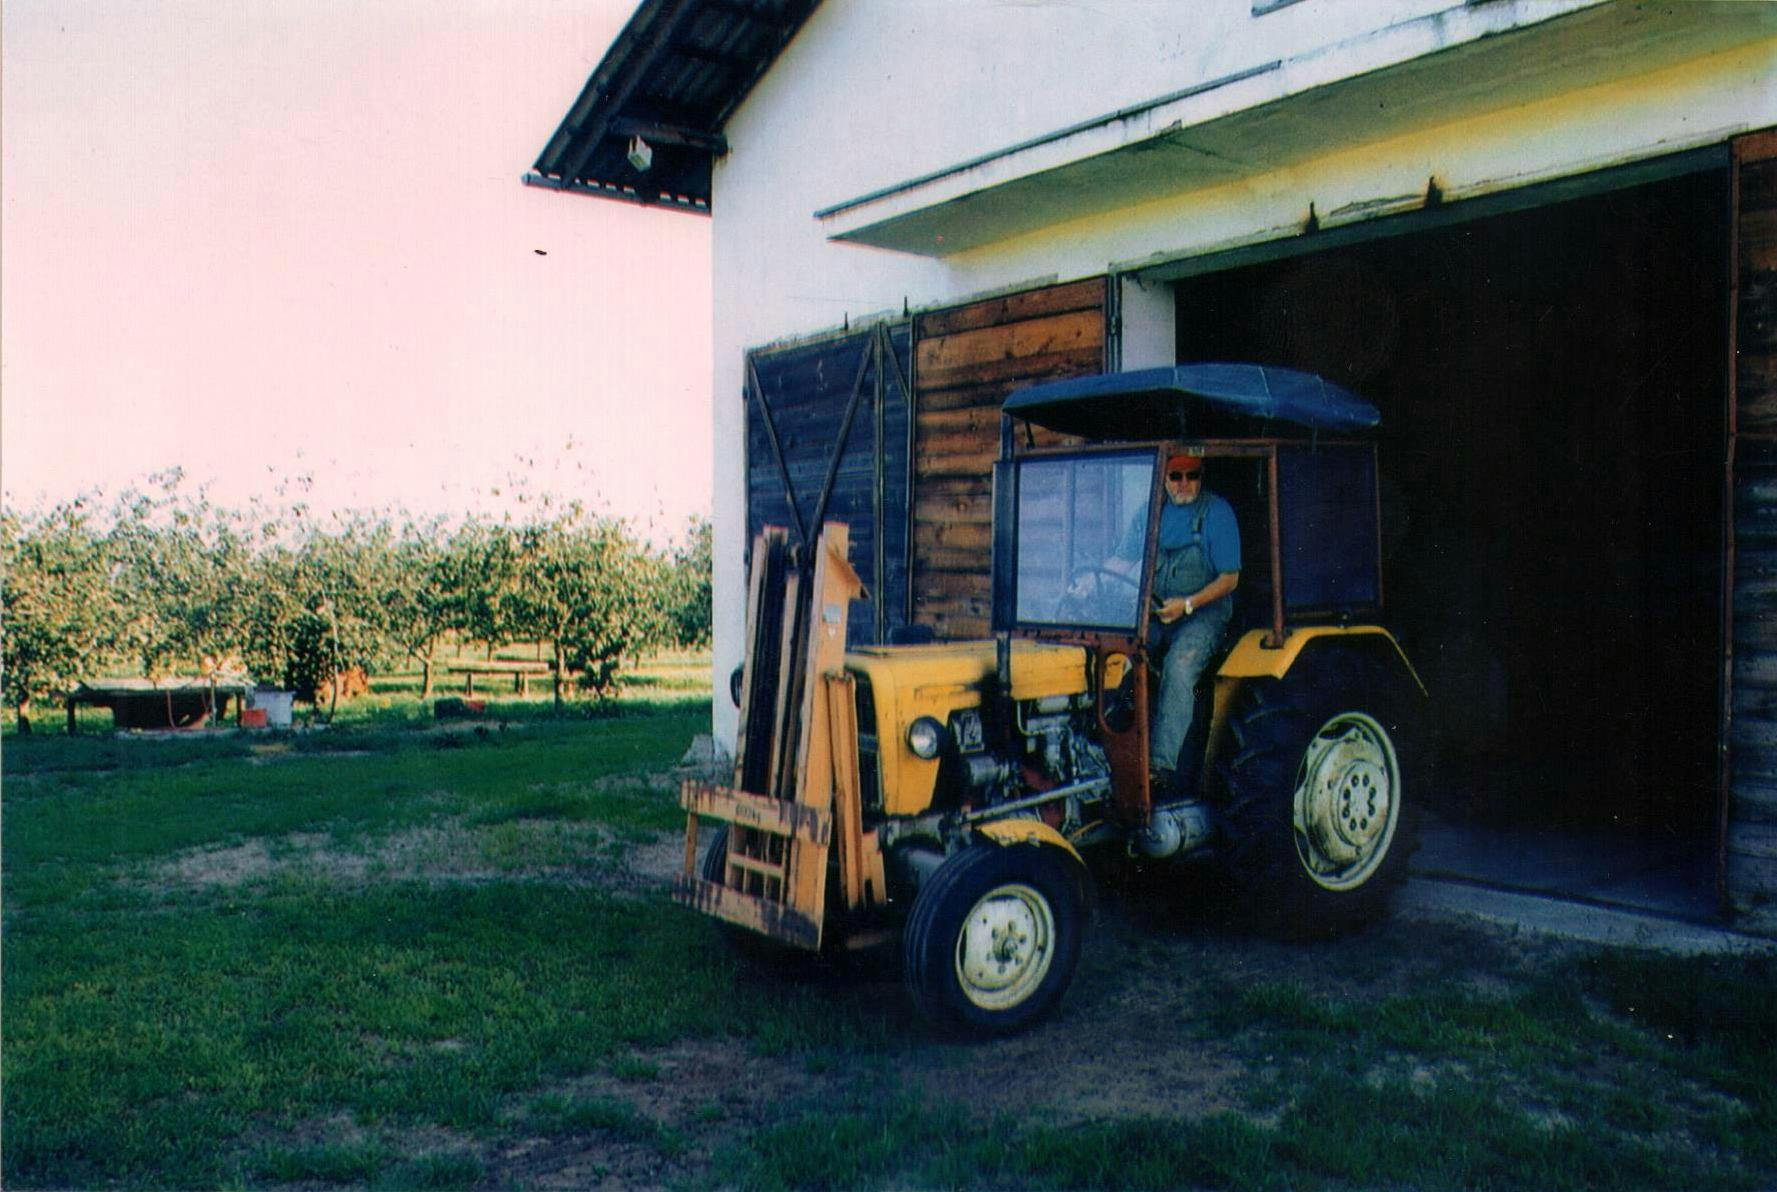 Właściciel sadu i lotniska, Zbigniew Kowalski, osobiście obsługuje ciągnik rolniczy, niezbędny w gospodarstwie sadowniczym.